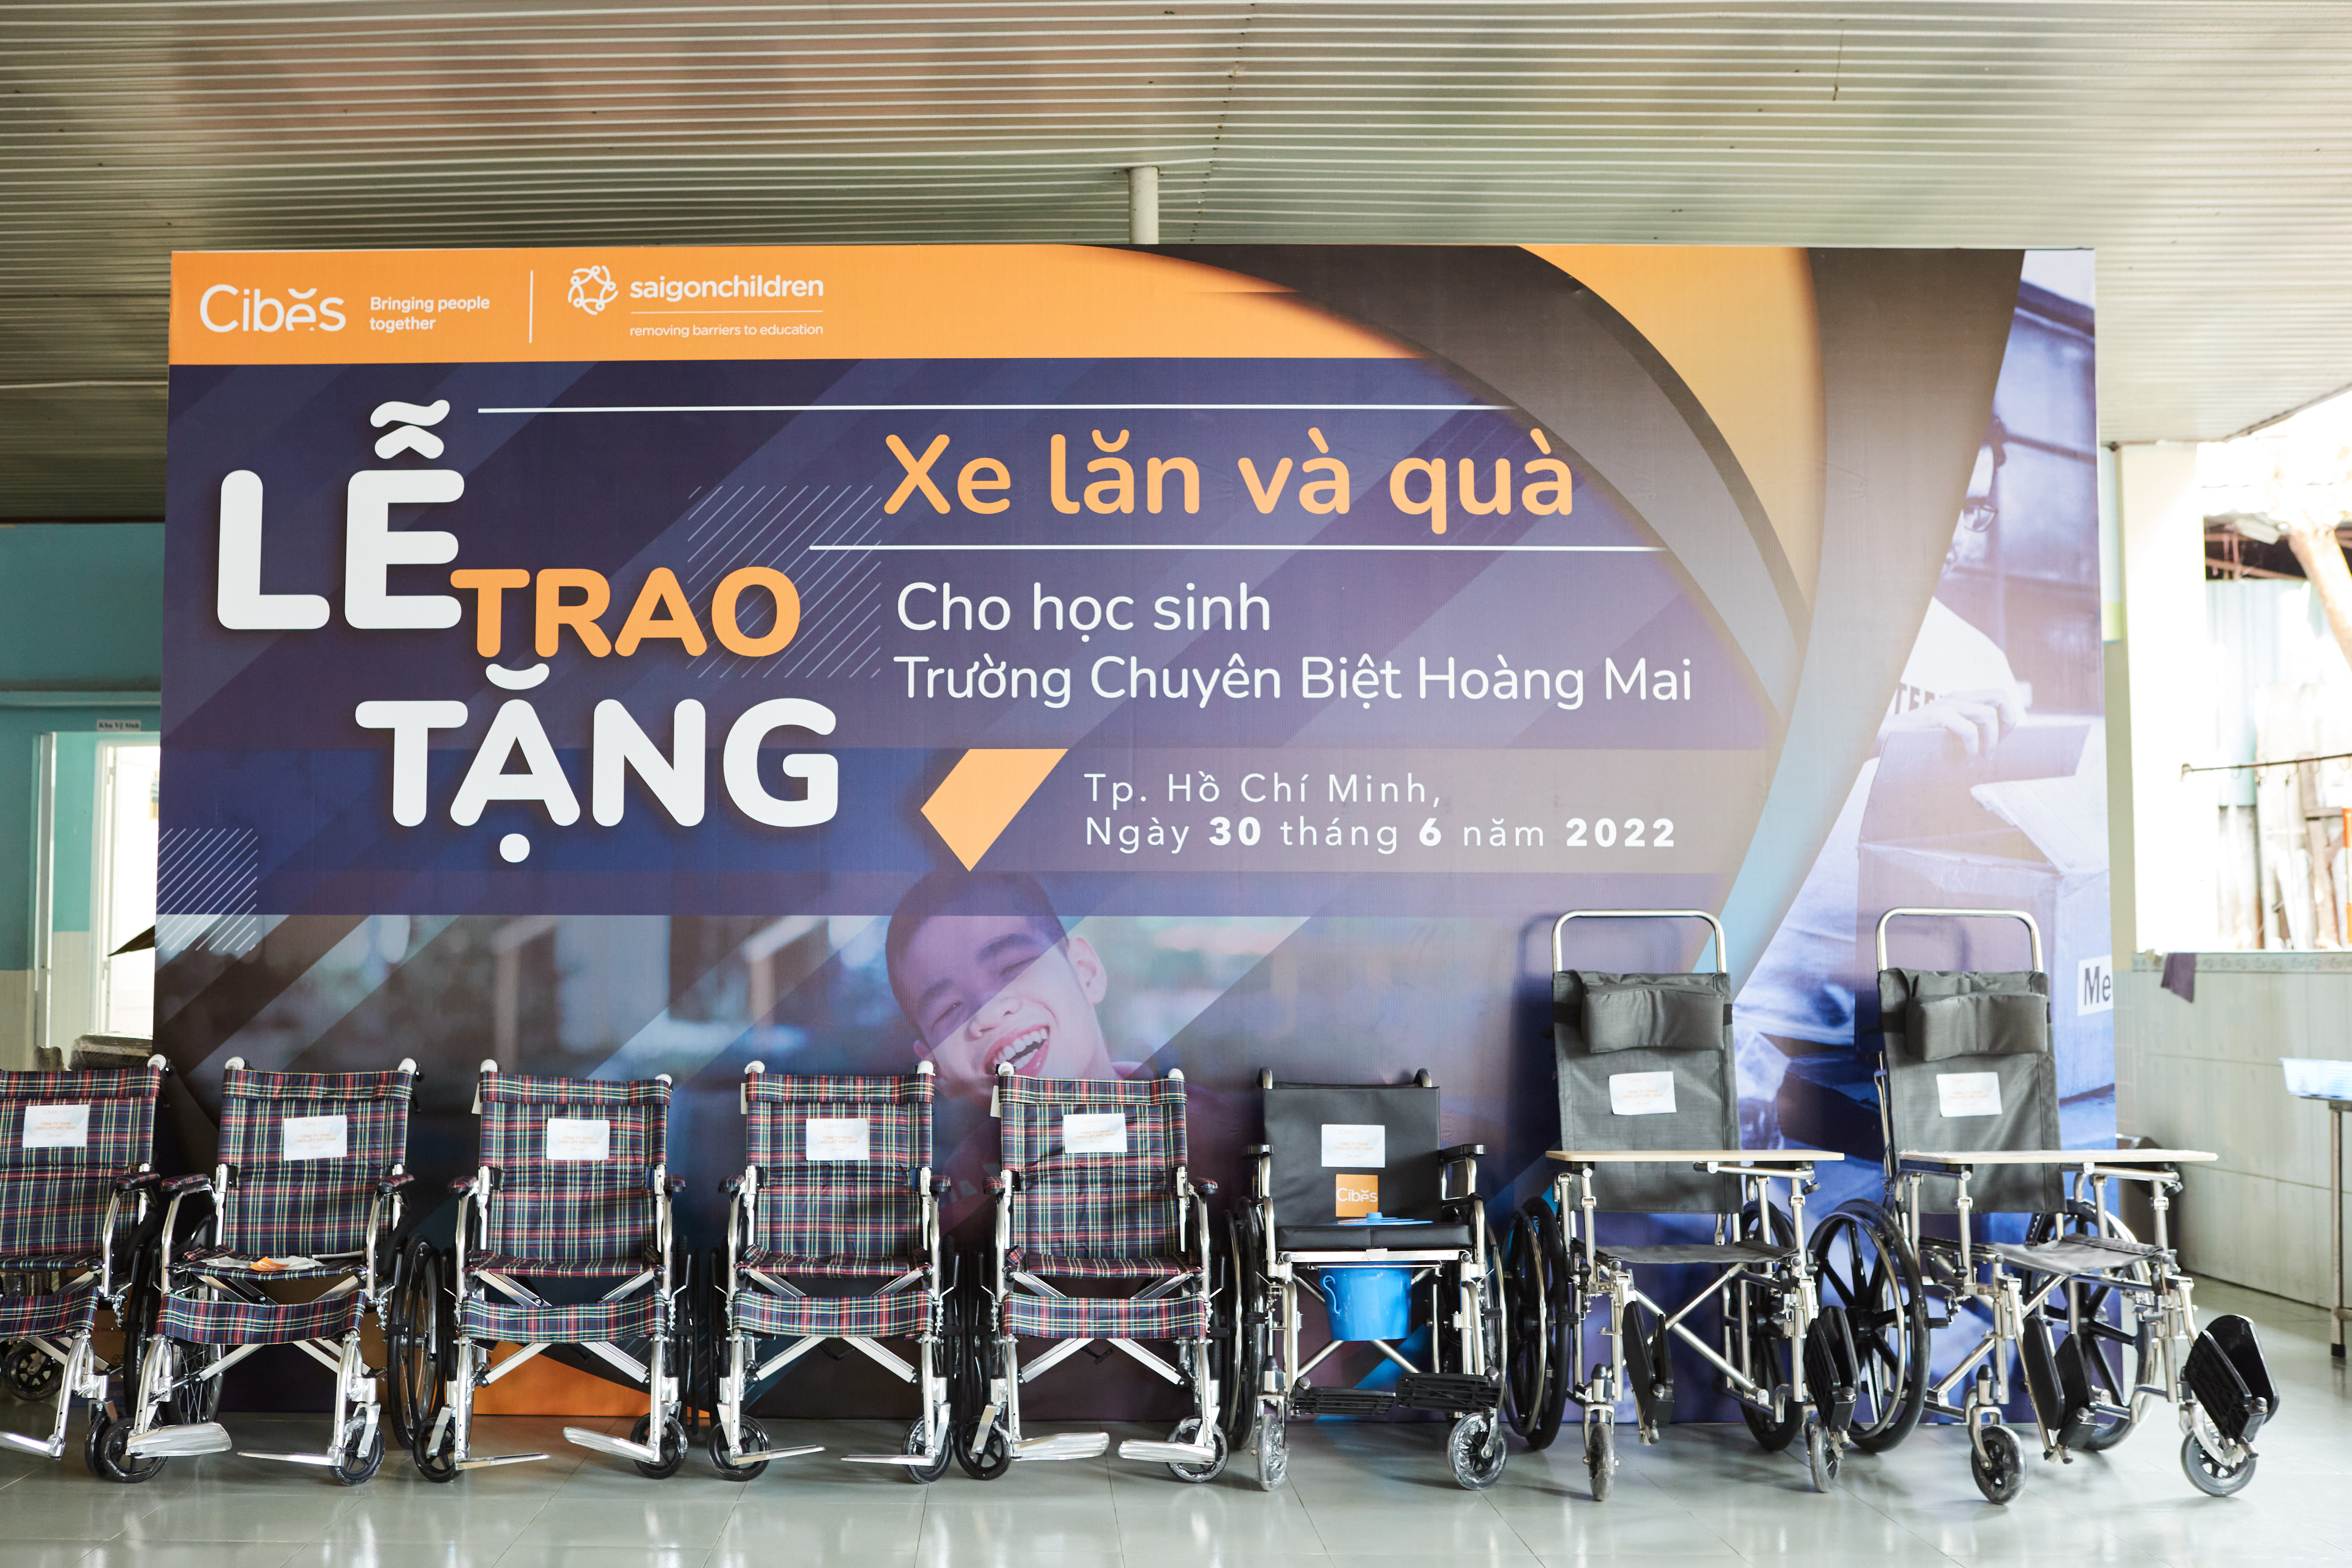 Trao tặng xe lăn và quà cho học sinh khuyết tật trường chuyên biệt Hoàng Mai, Tp. Hồ Chí Minh